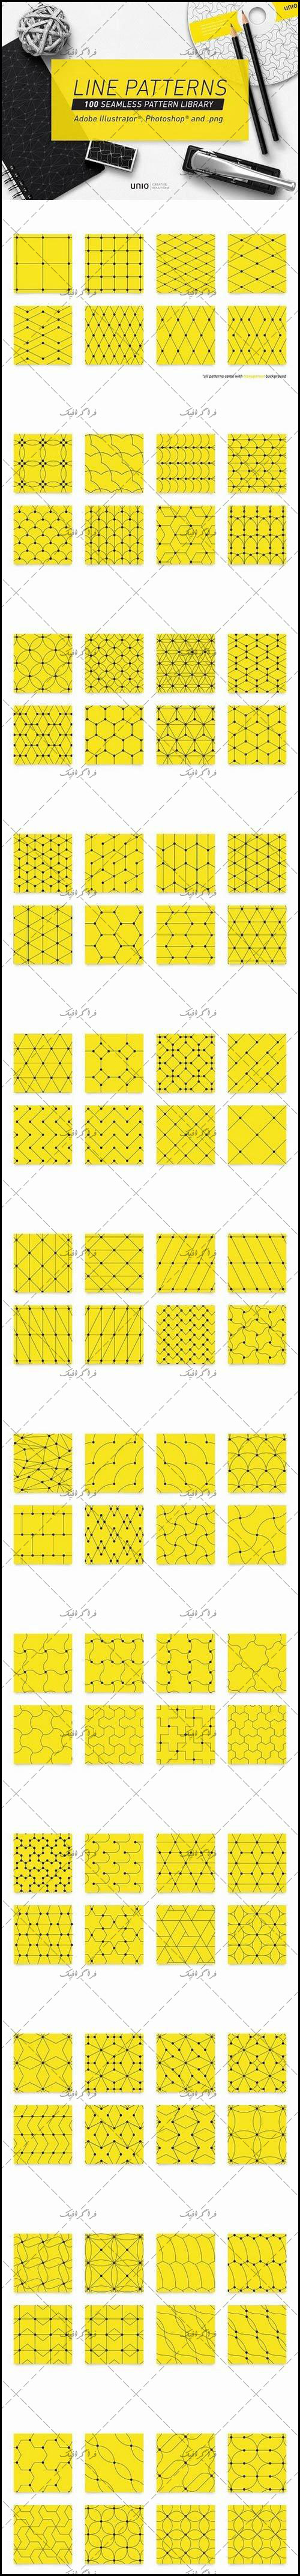 دانلود پترن های فتوشاپ خطی Line Patterns - شماره 2